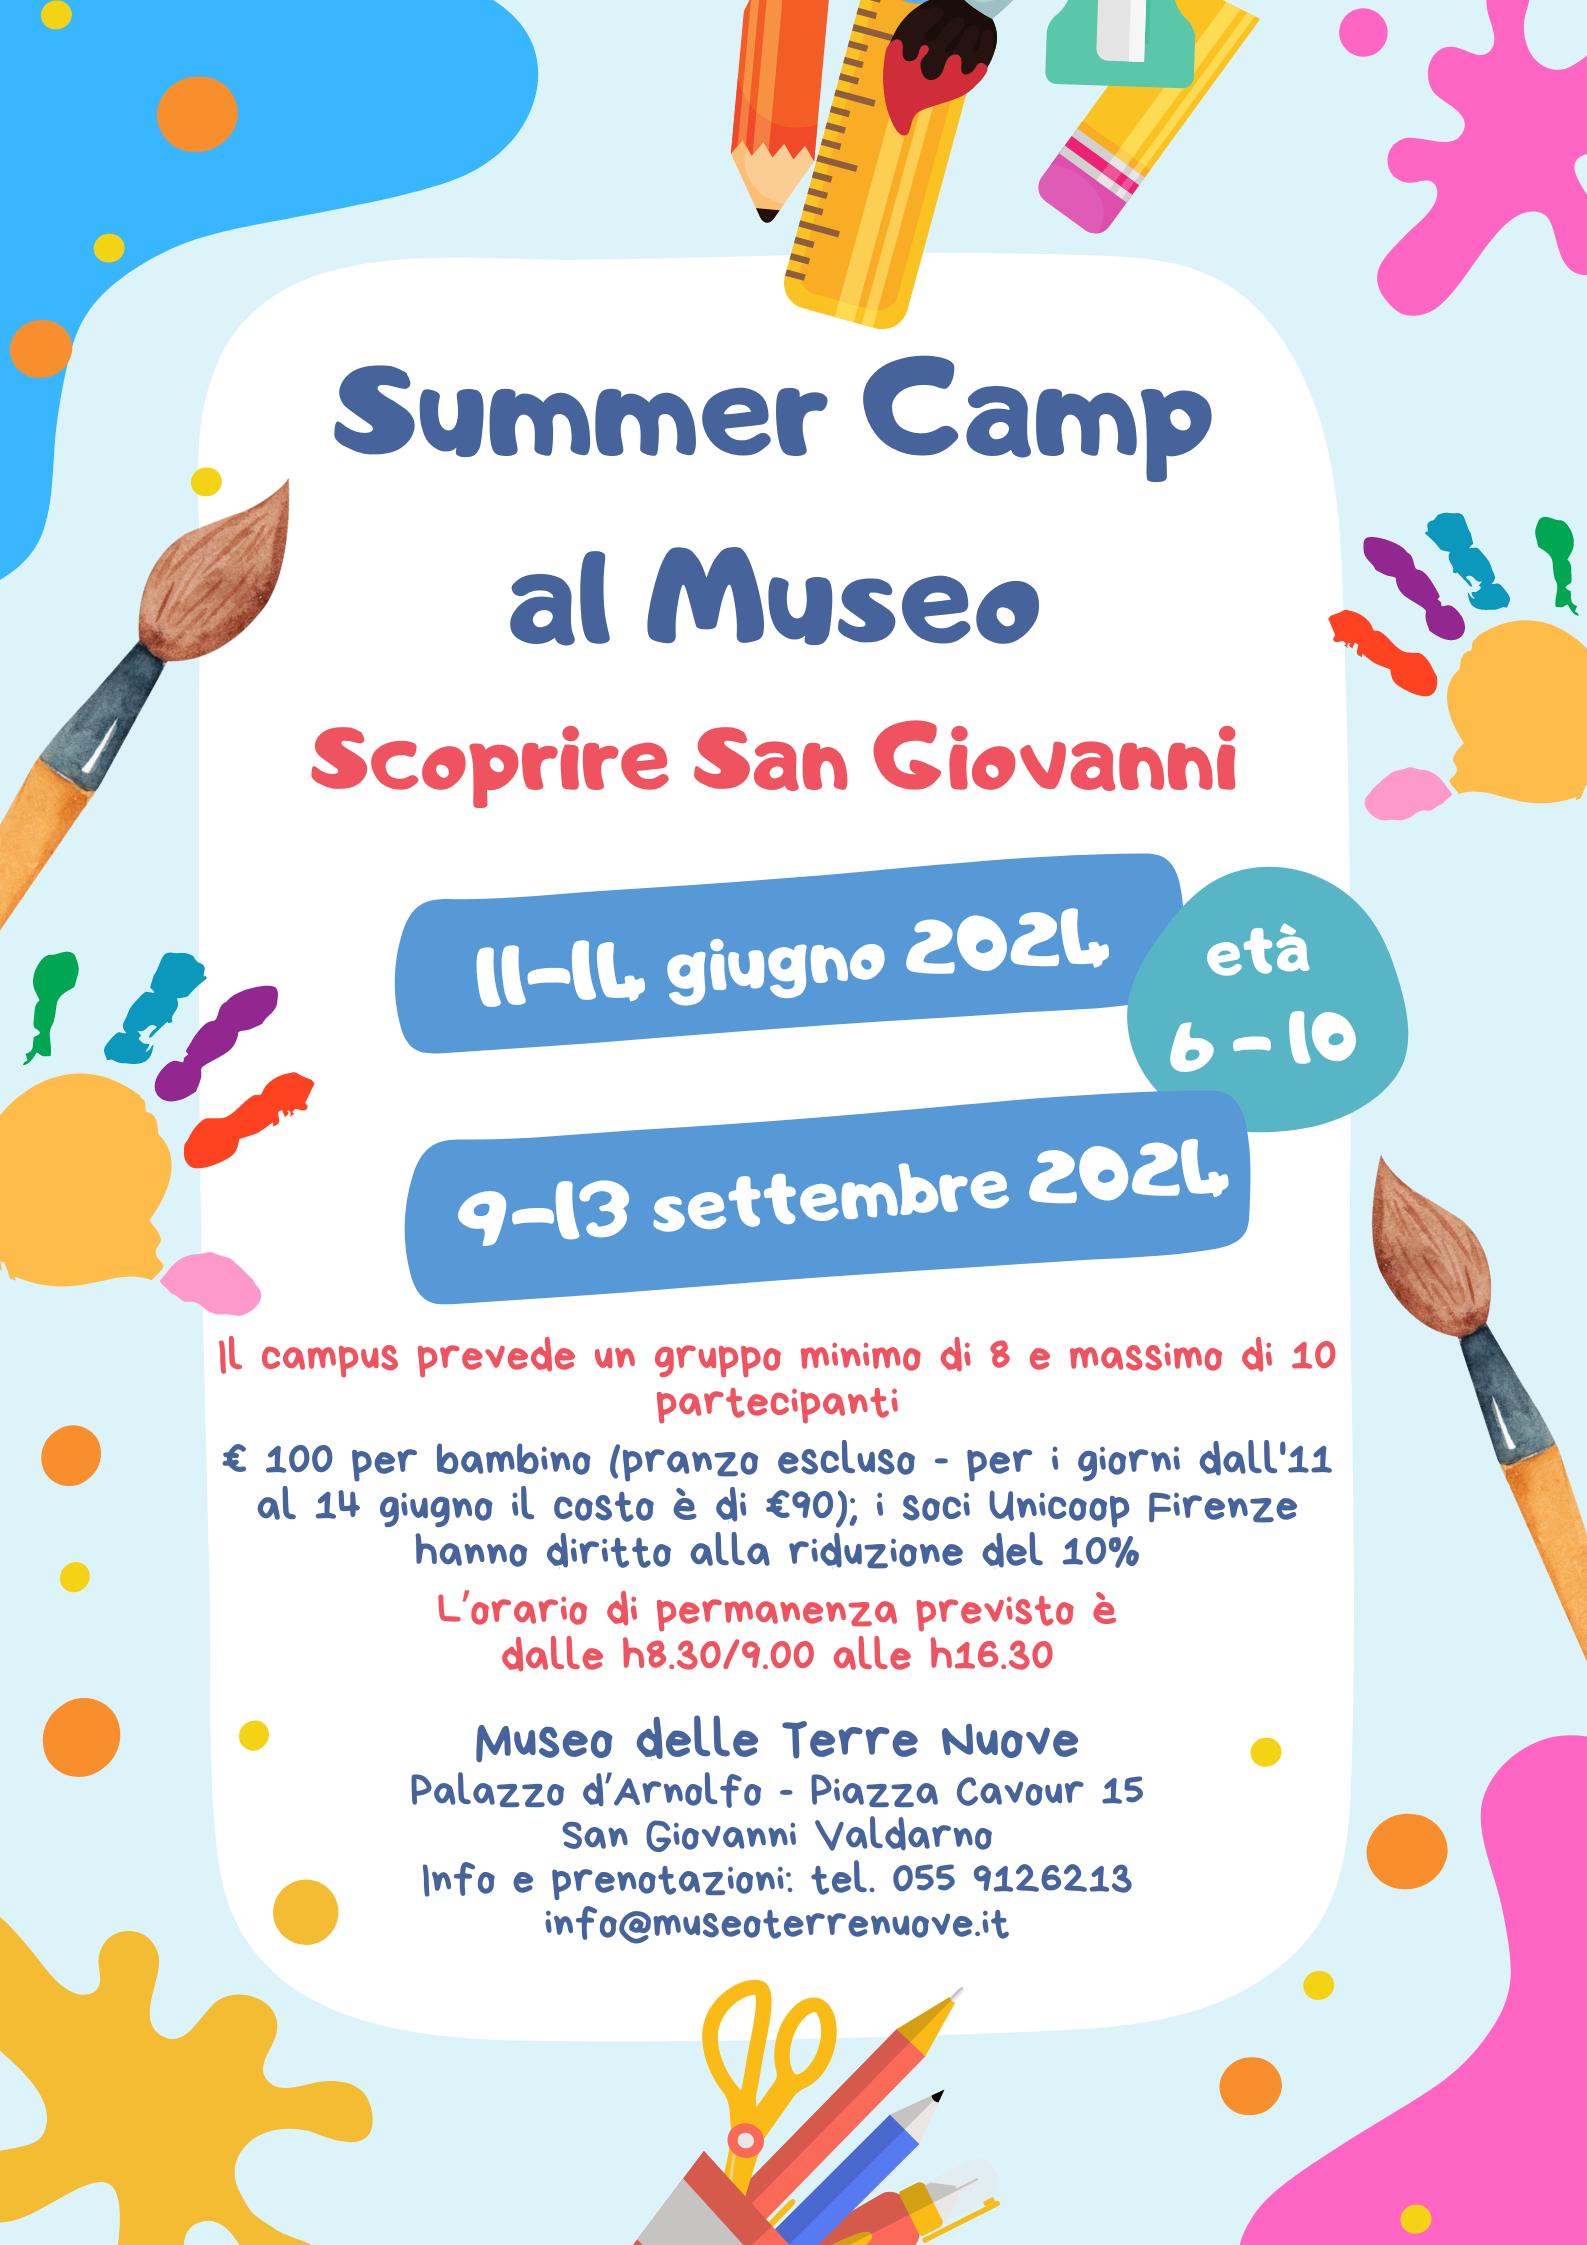 SUMMER CAMP AL MUSEO – Scoprire San Giovanni